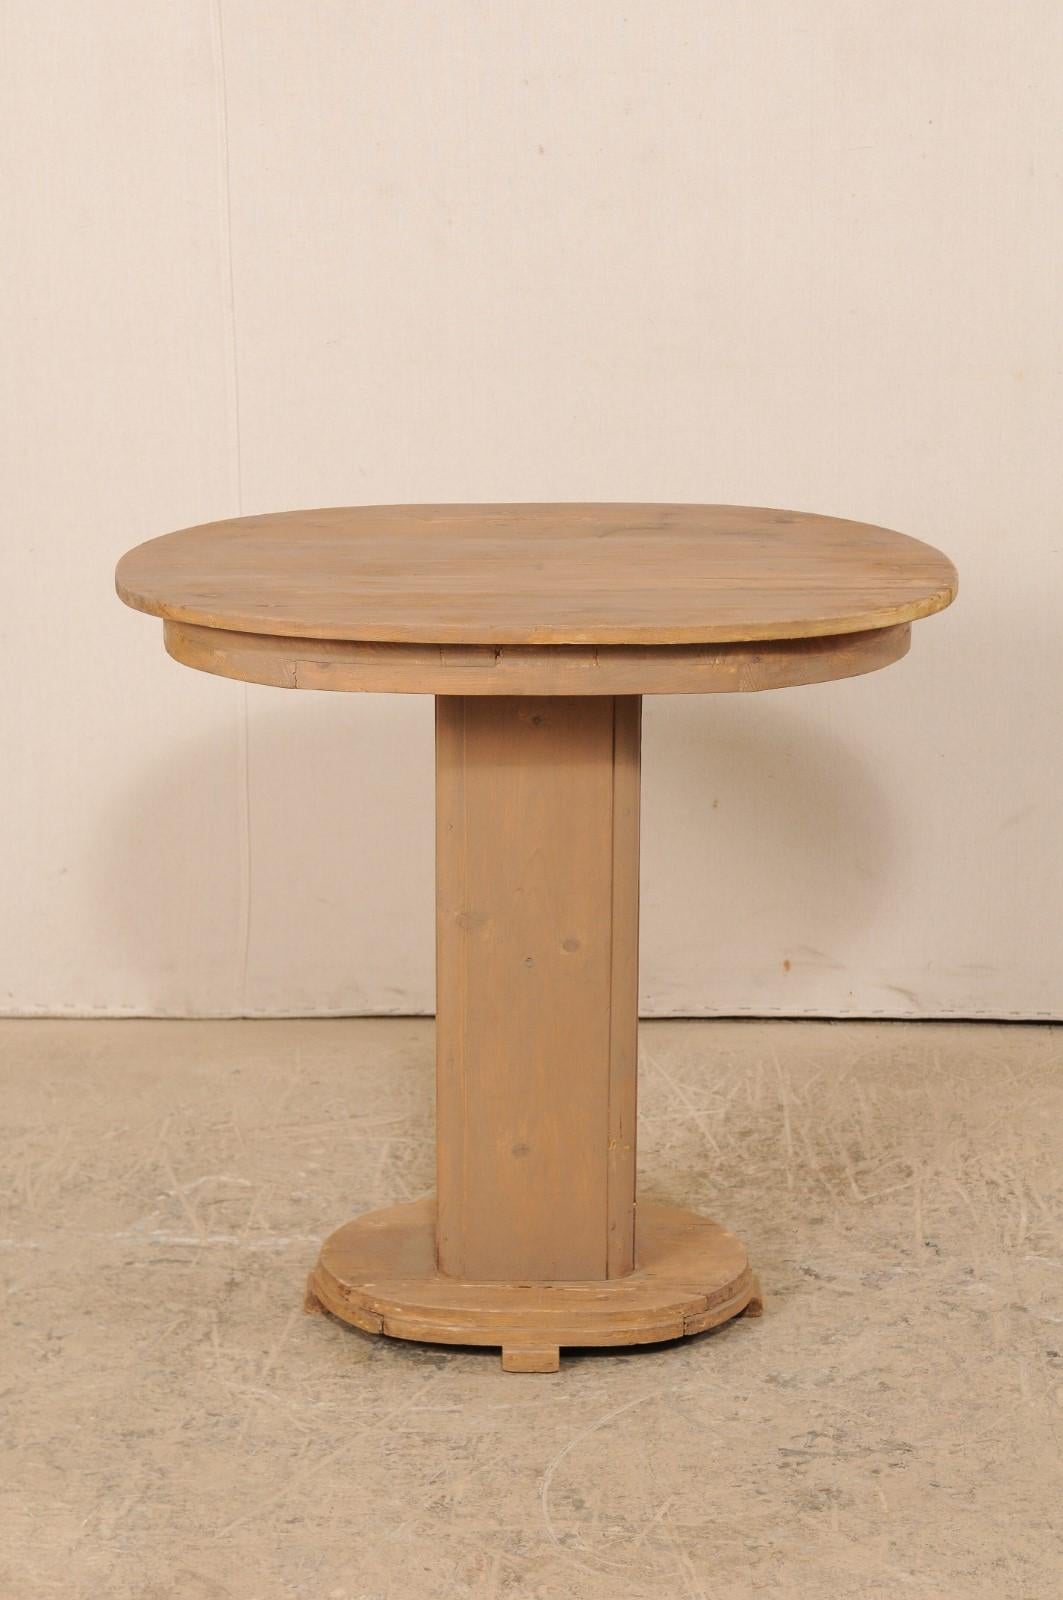 Ovaler französischer Sockeltisch aus bemaltem Holz aus der Mitte des 20. Jahrhunderts. Dieser Vintage-Tisch aus Frankreich besteht aus einer ovalen Platte mit glattem Sockel, die auf einer rechteckigen Säule mit abgerundeten Kanten ruht, und einem